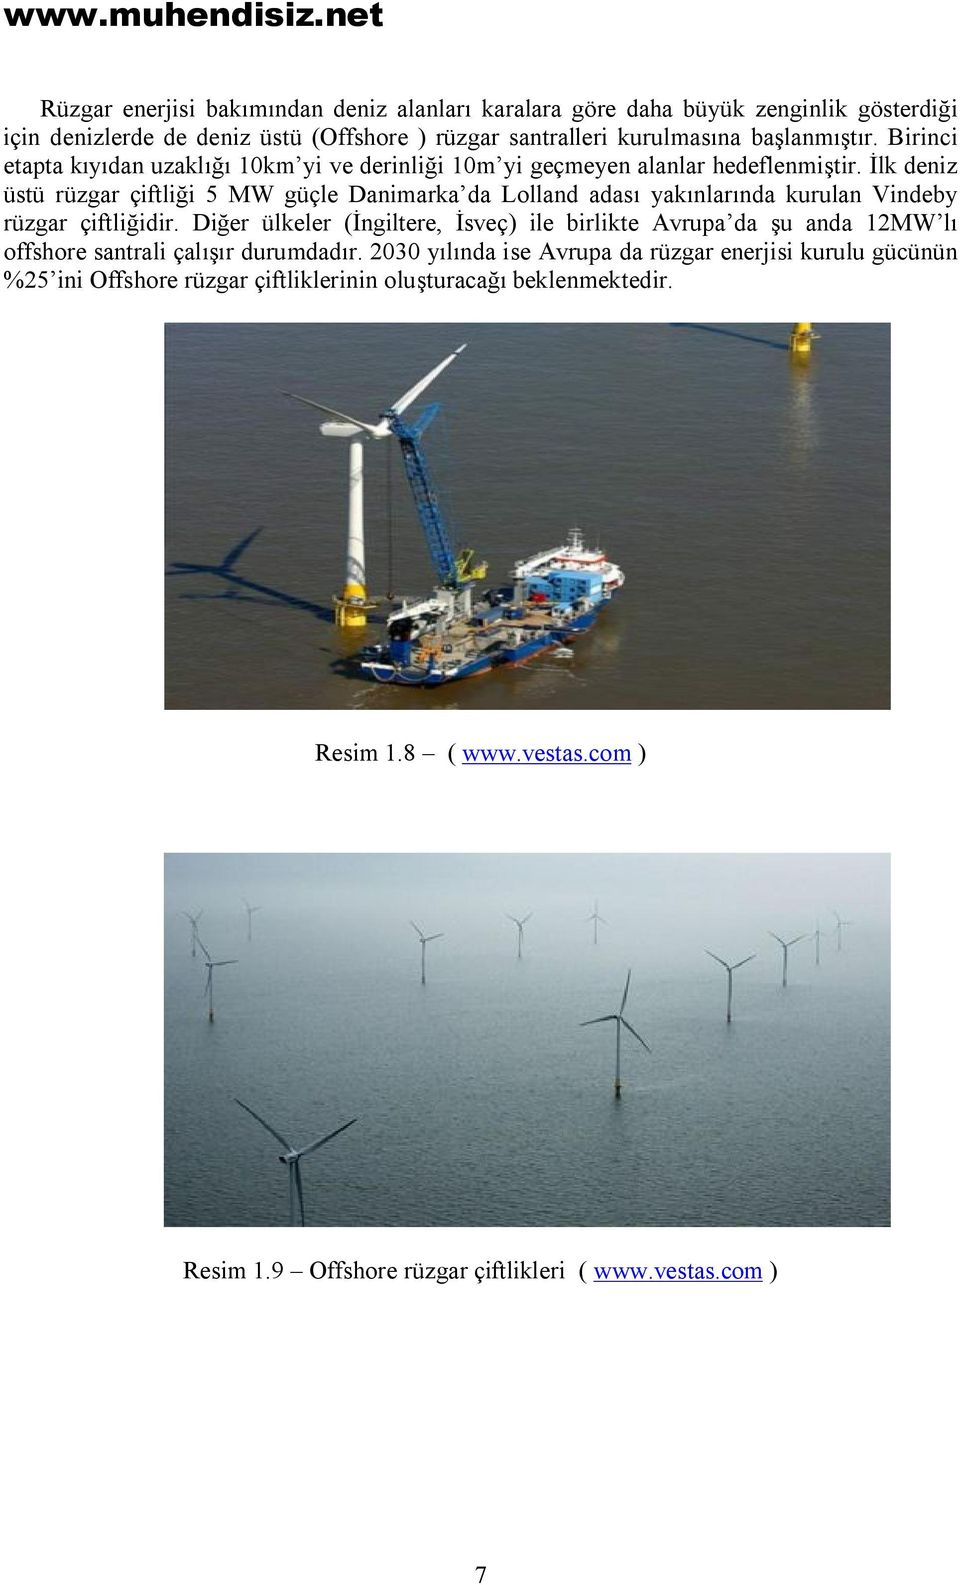 İlk deniz üstü rüzgar çiftliği 5 MW güçle Danimarka da Lolland adası yakınlarında kurulan Vindeby rüzgar çiftliğidir.